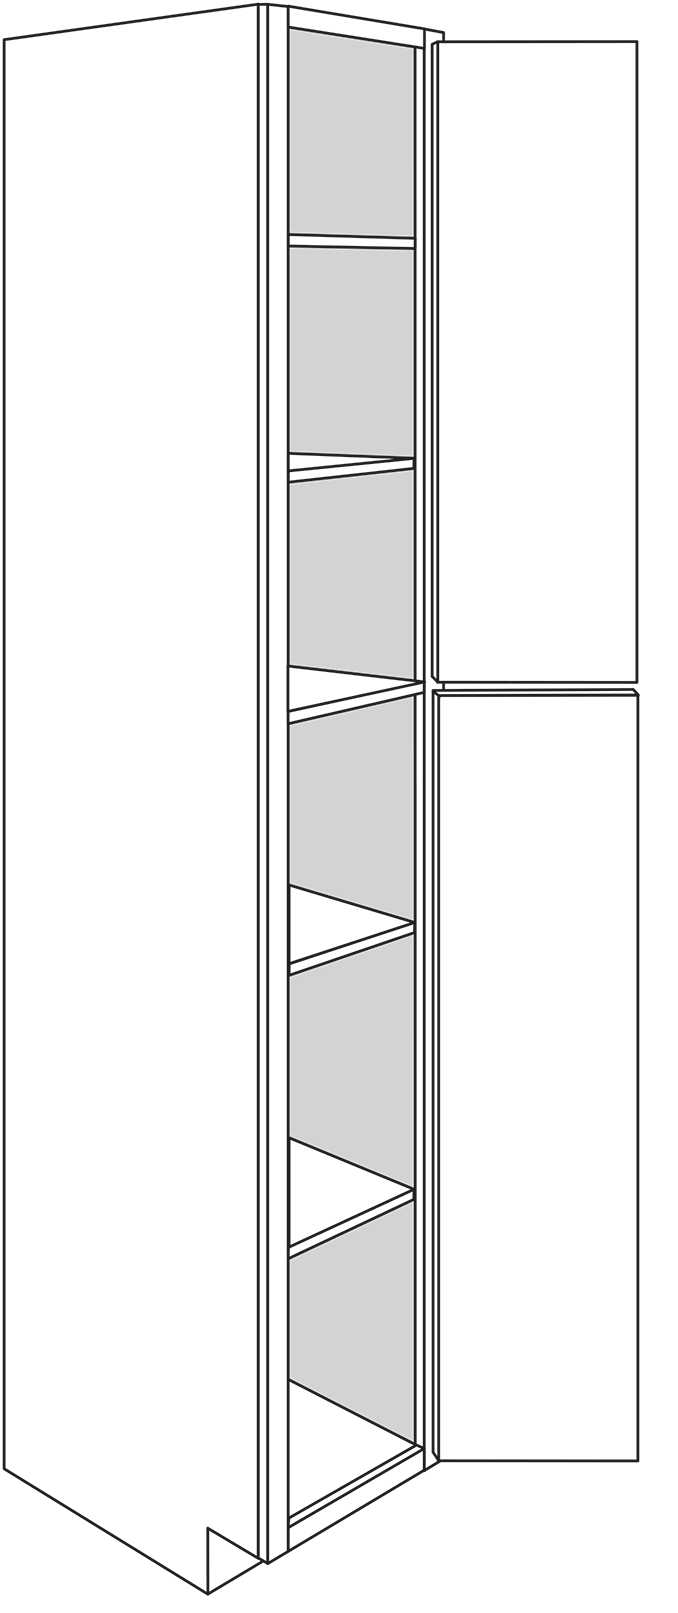 Rustic Shaker Double-Door Pantry Cabinet 18″W x 96″H